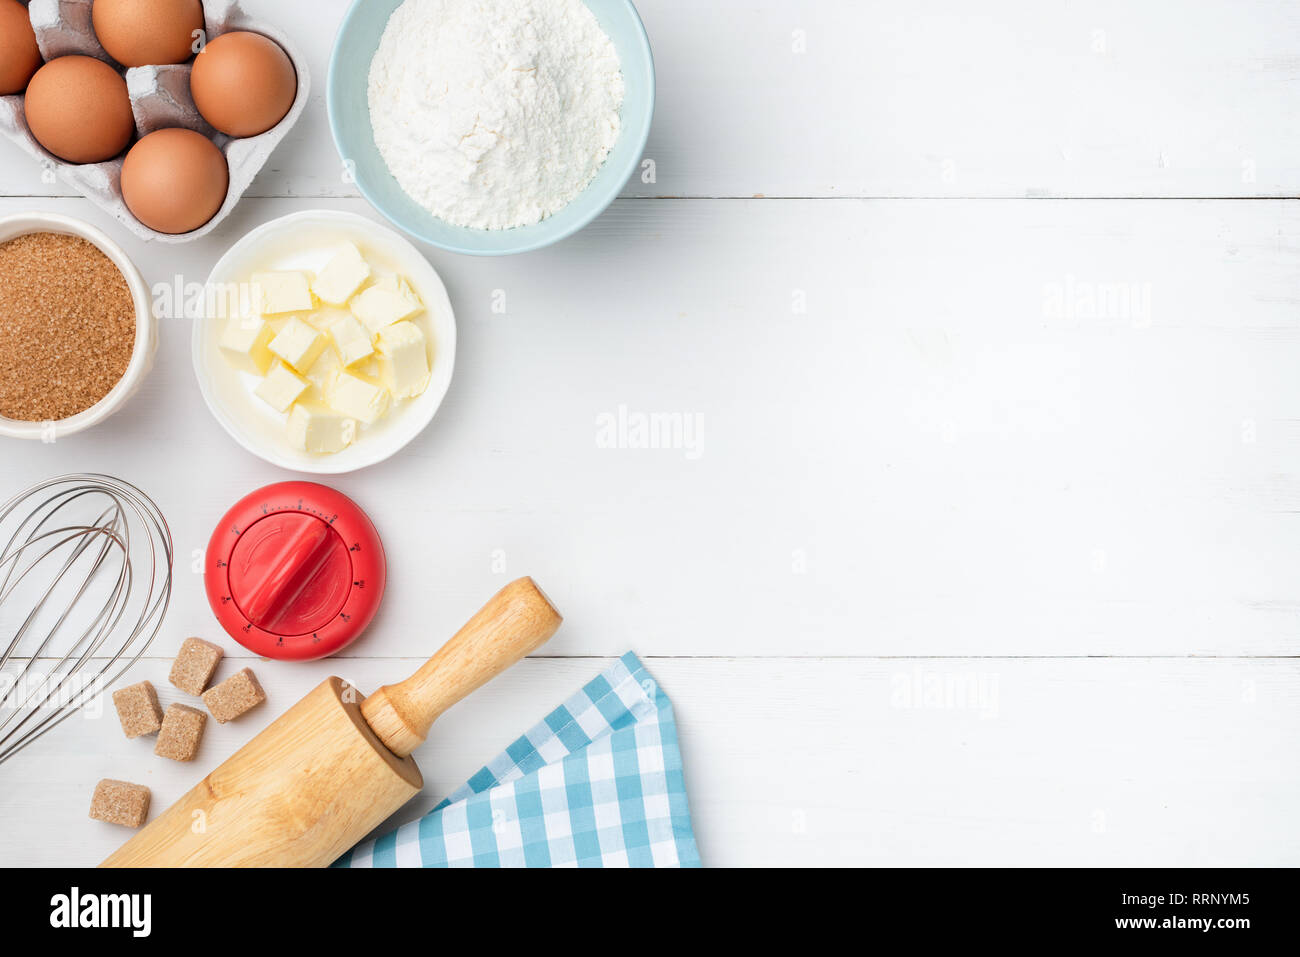 Table en bois blanc avec des ingrédients de base. Beurre, farine, oeufs, sucre et d''ustensiles de cuisine. Ingrédients pour faire des biscuits, gâteaux, pâte pr Banque D'Images